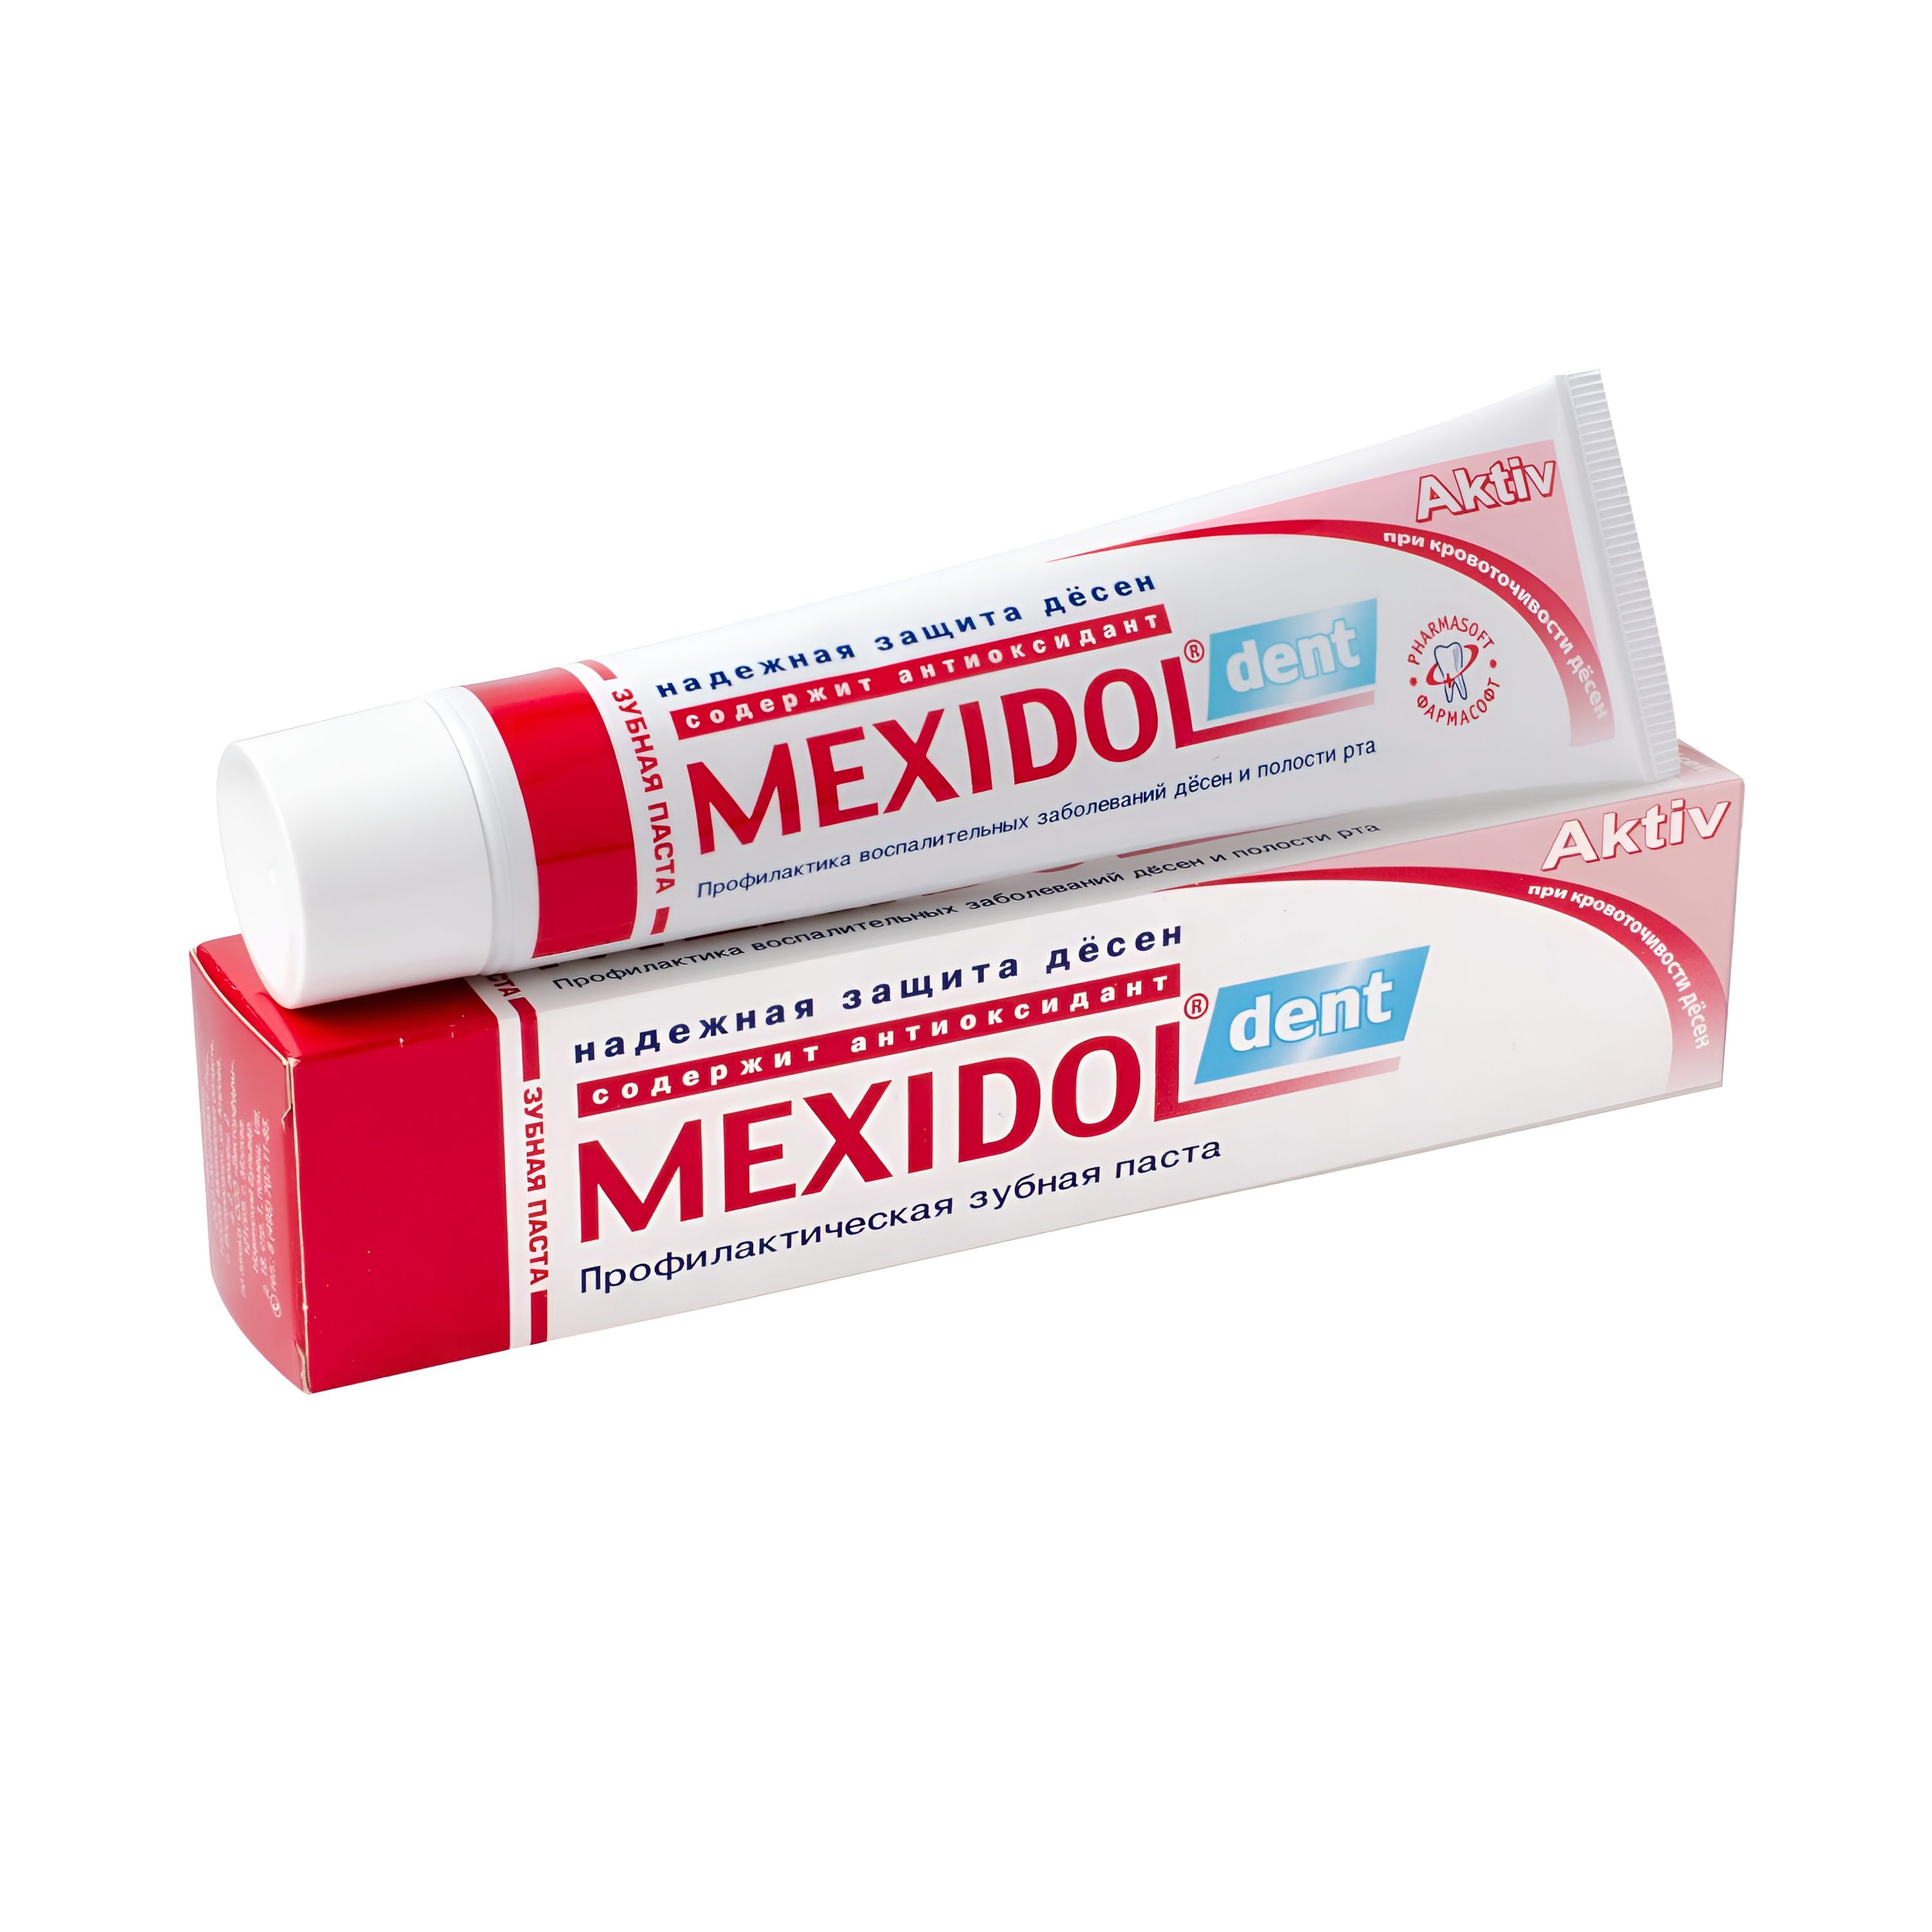 Мексидол Дент Актив, зубная паста, 65 г